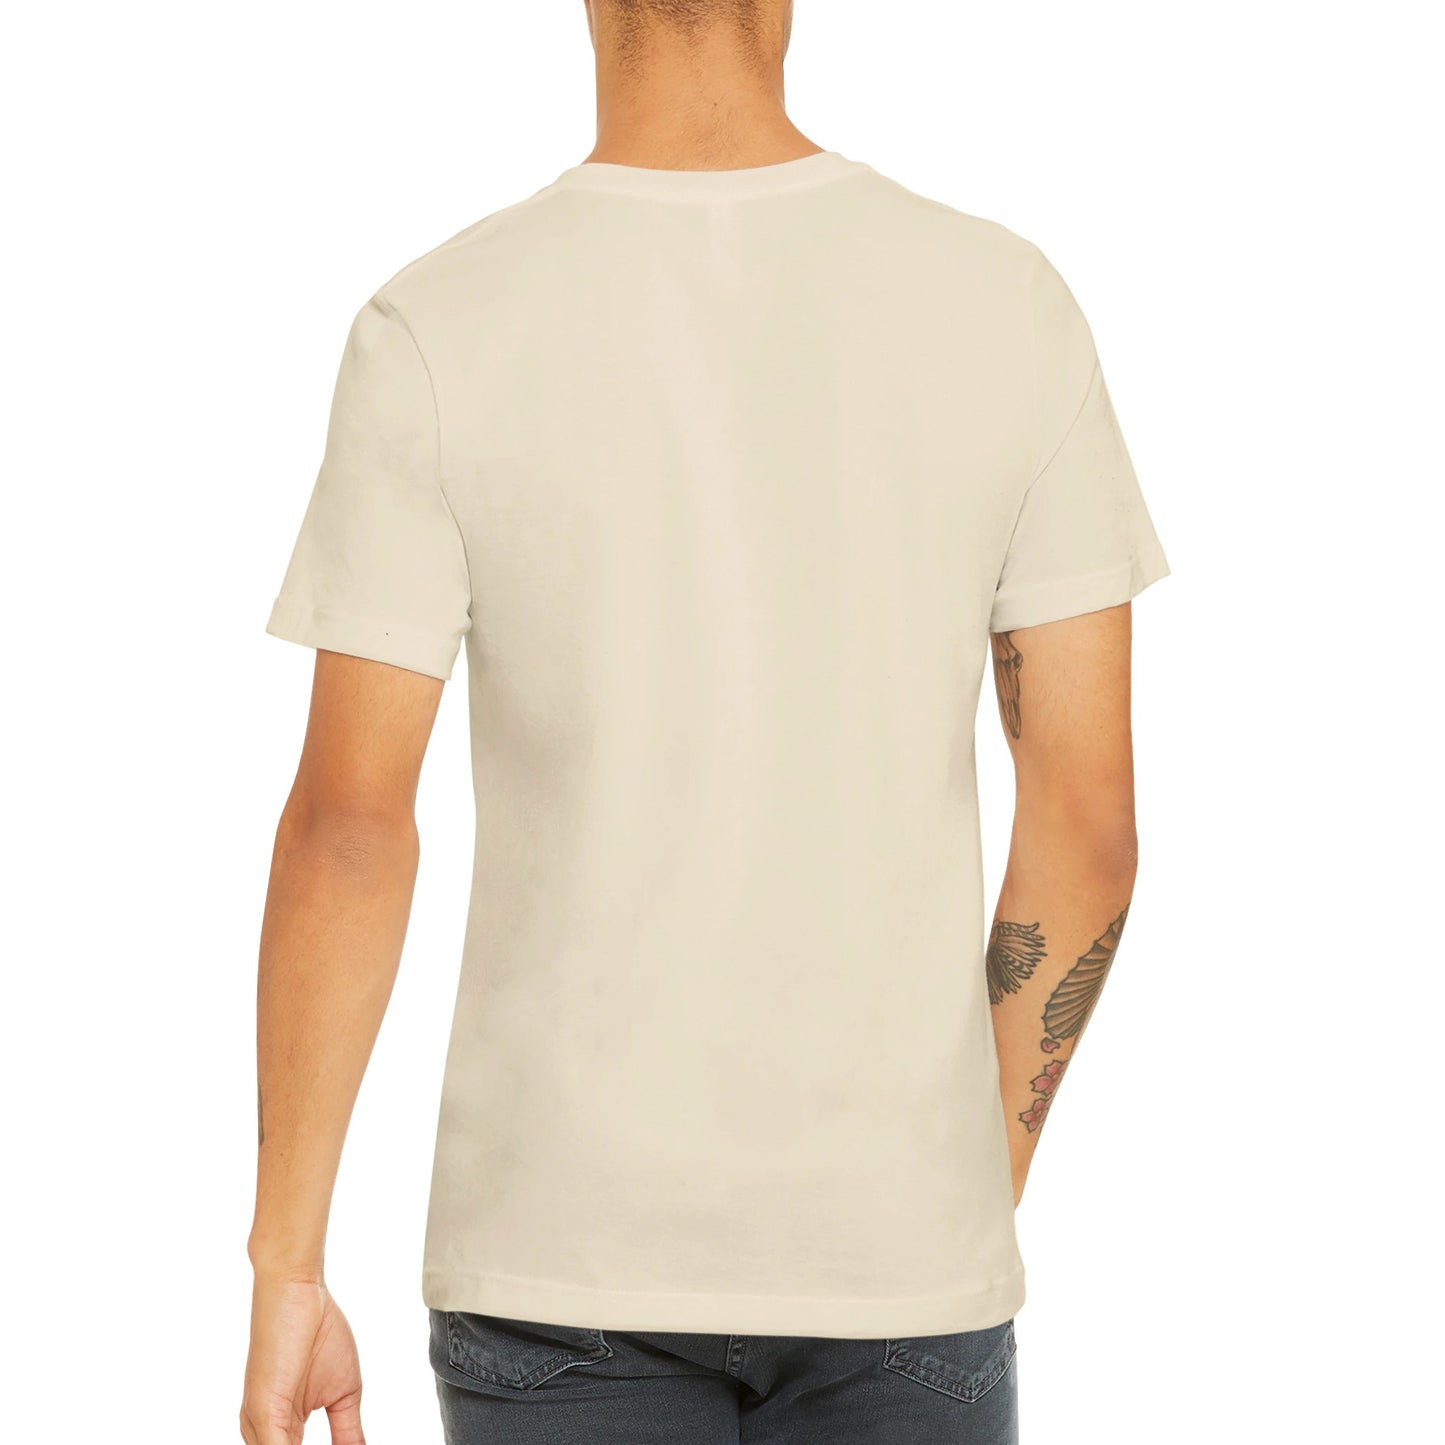 Günstiges Unisex-T-Shirt mit Rundhalsausschnitt/Ich mag Morgen nicht